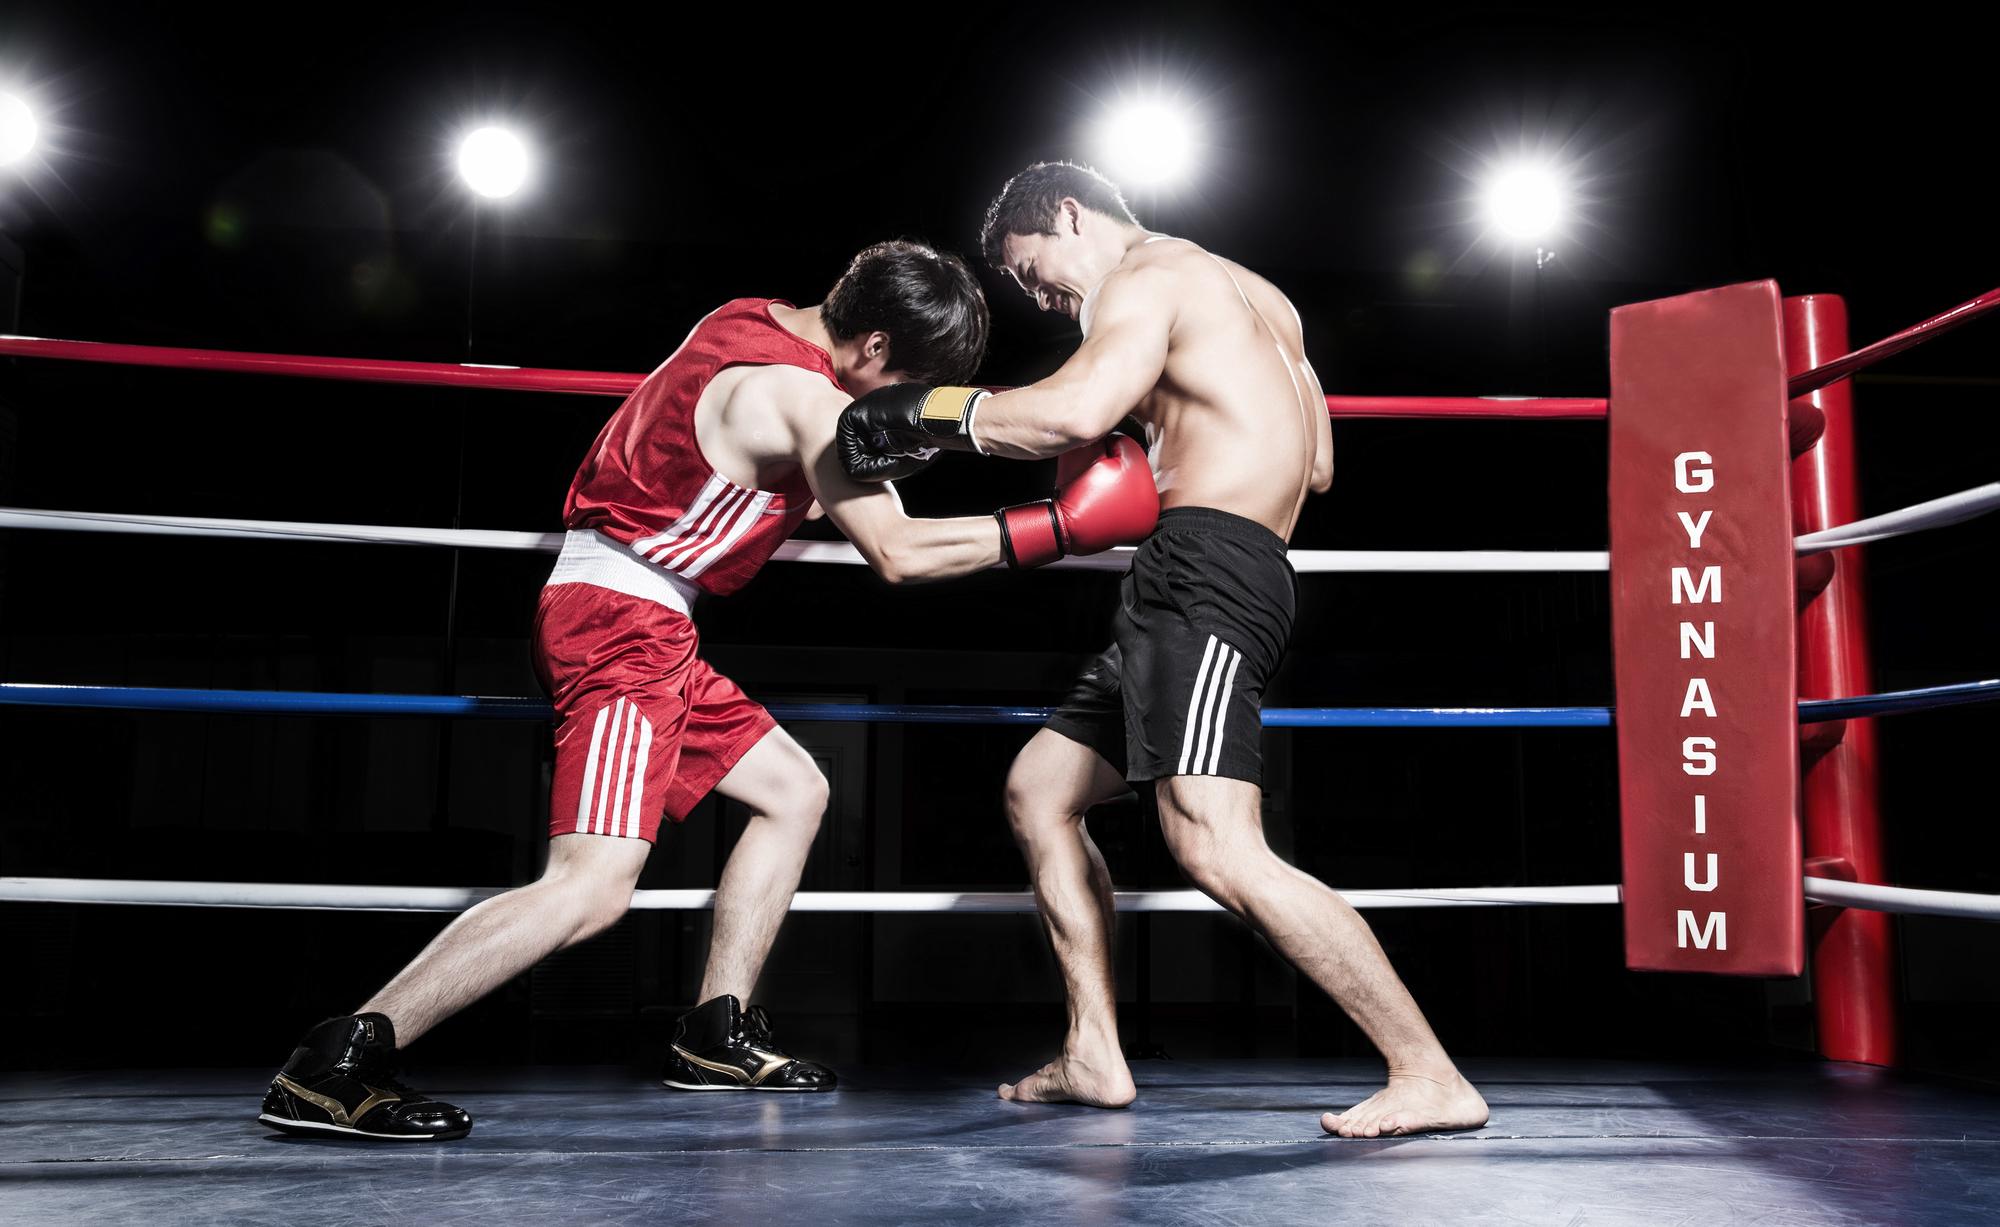 ボクシングのルールや階級 計量などの基礎知識 スポーツ用品はスーパースポーツゼビオ